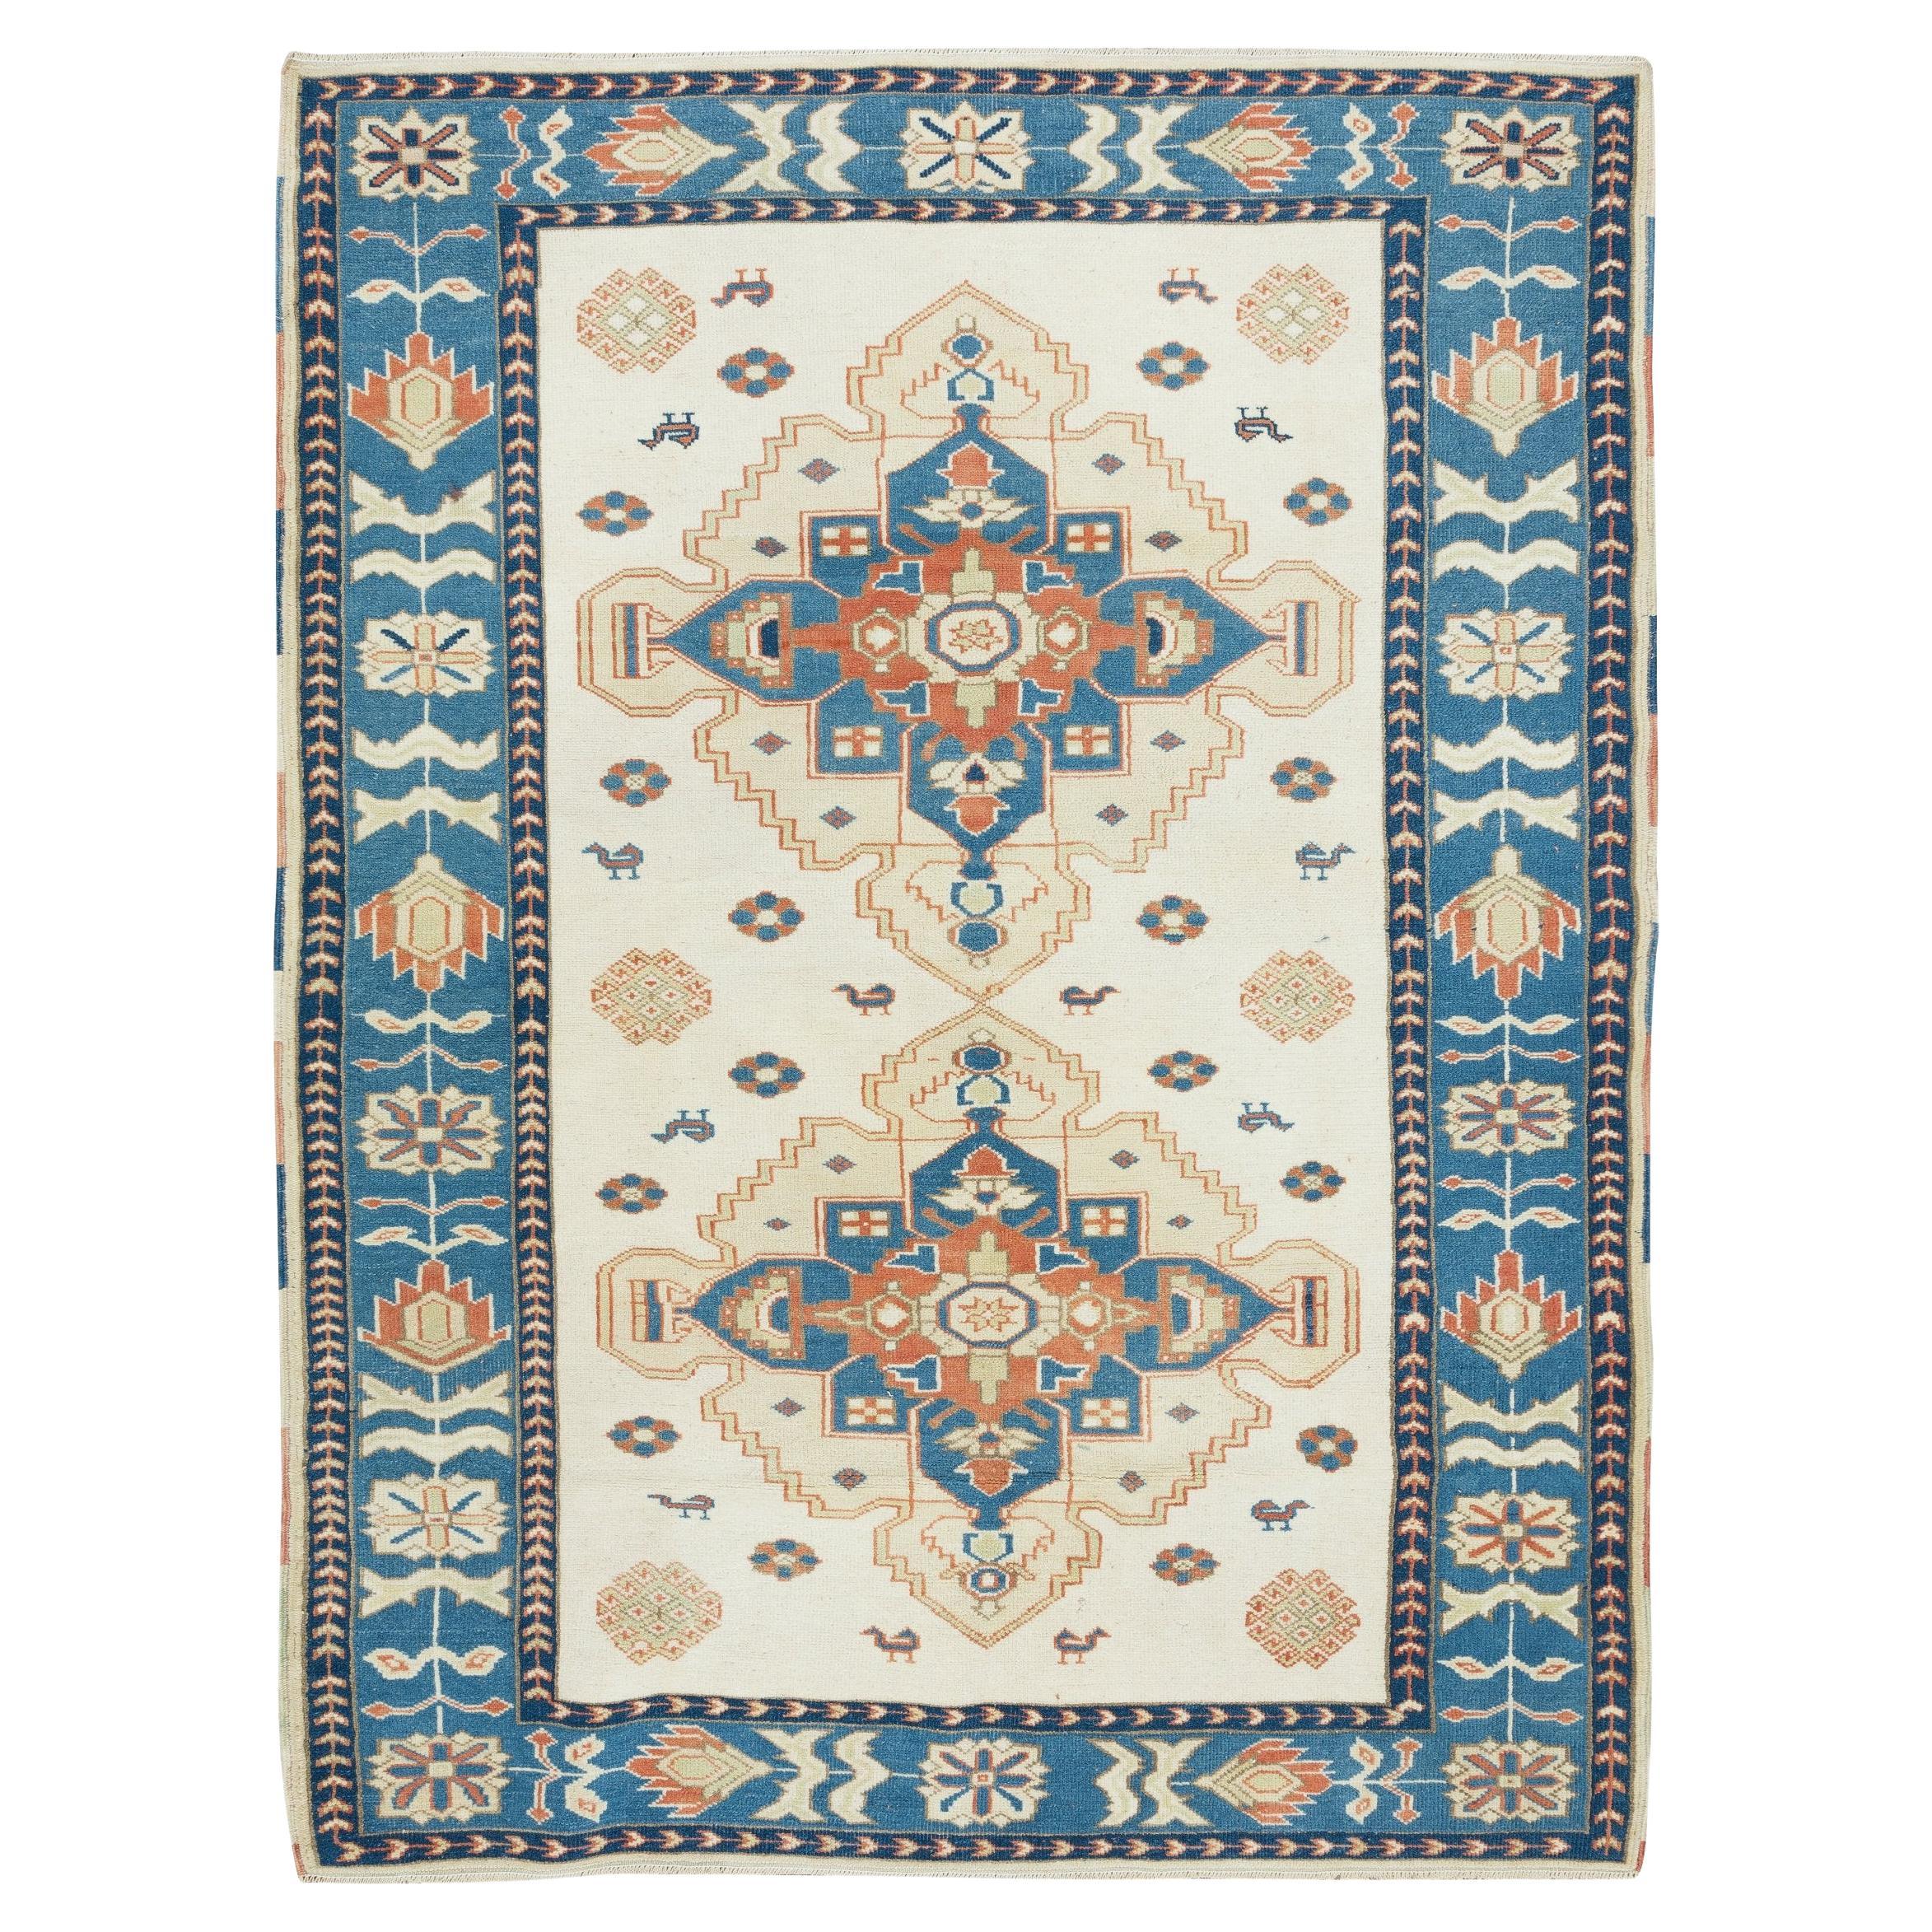 4.6x6.3 Ft Vintage Turkish Wool Rug, Geometric Handmade Carpet in Beige and Blue